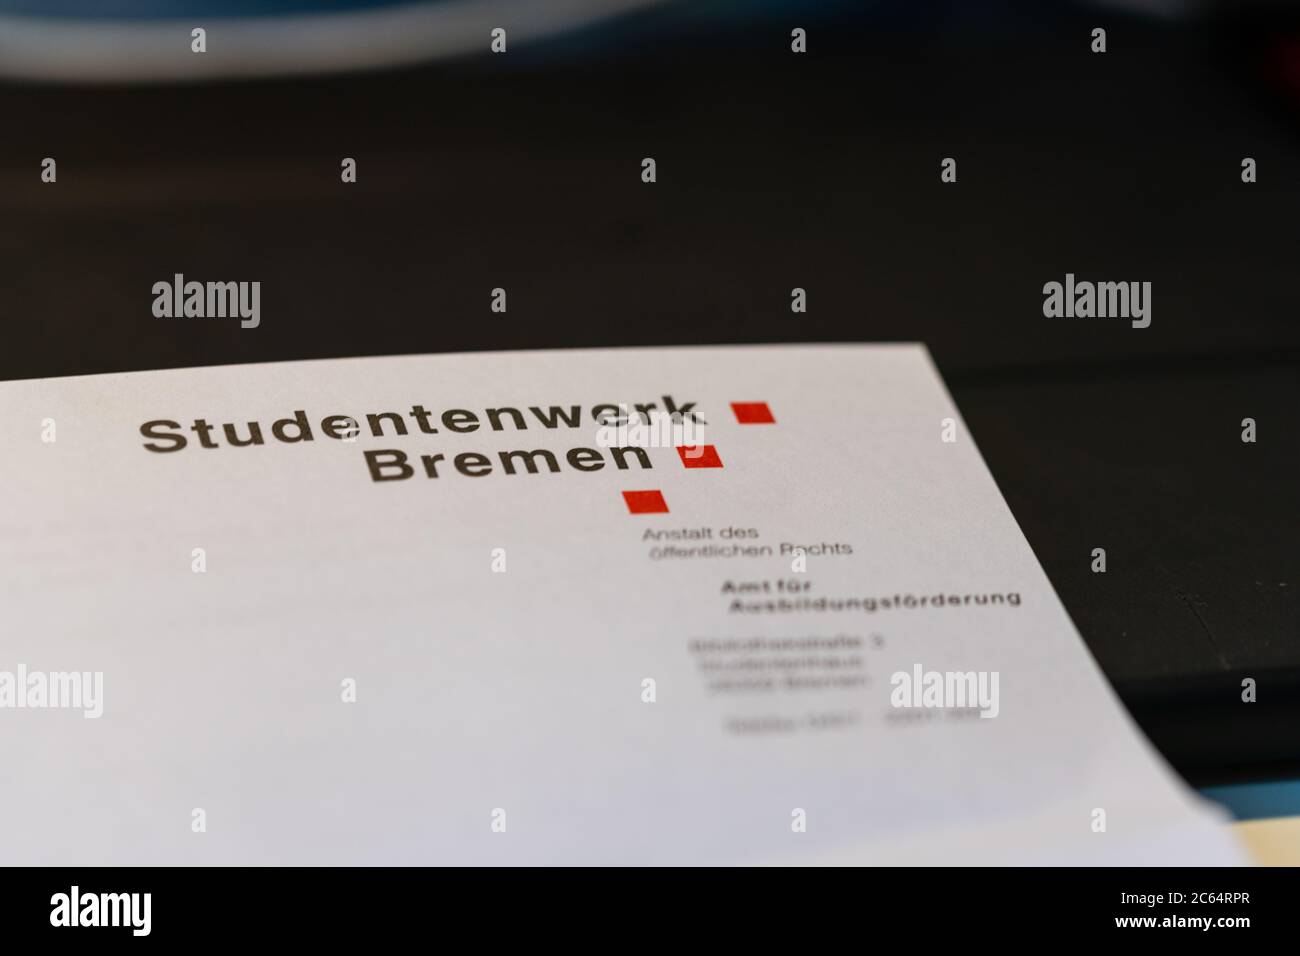 Hude, Deutschland, 07.07.2020: Fotos eines Briefkopfes vom Studentenwerk Bremen Foto Stock